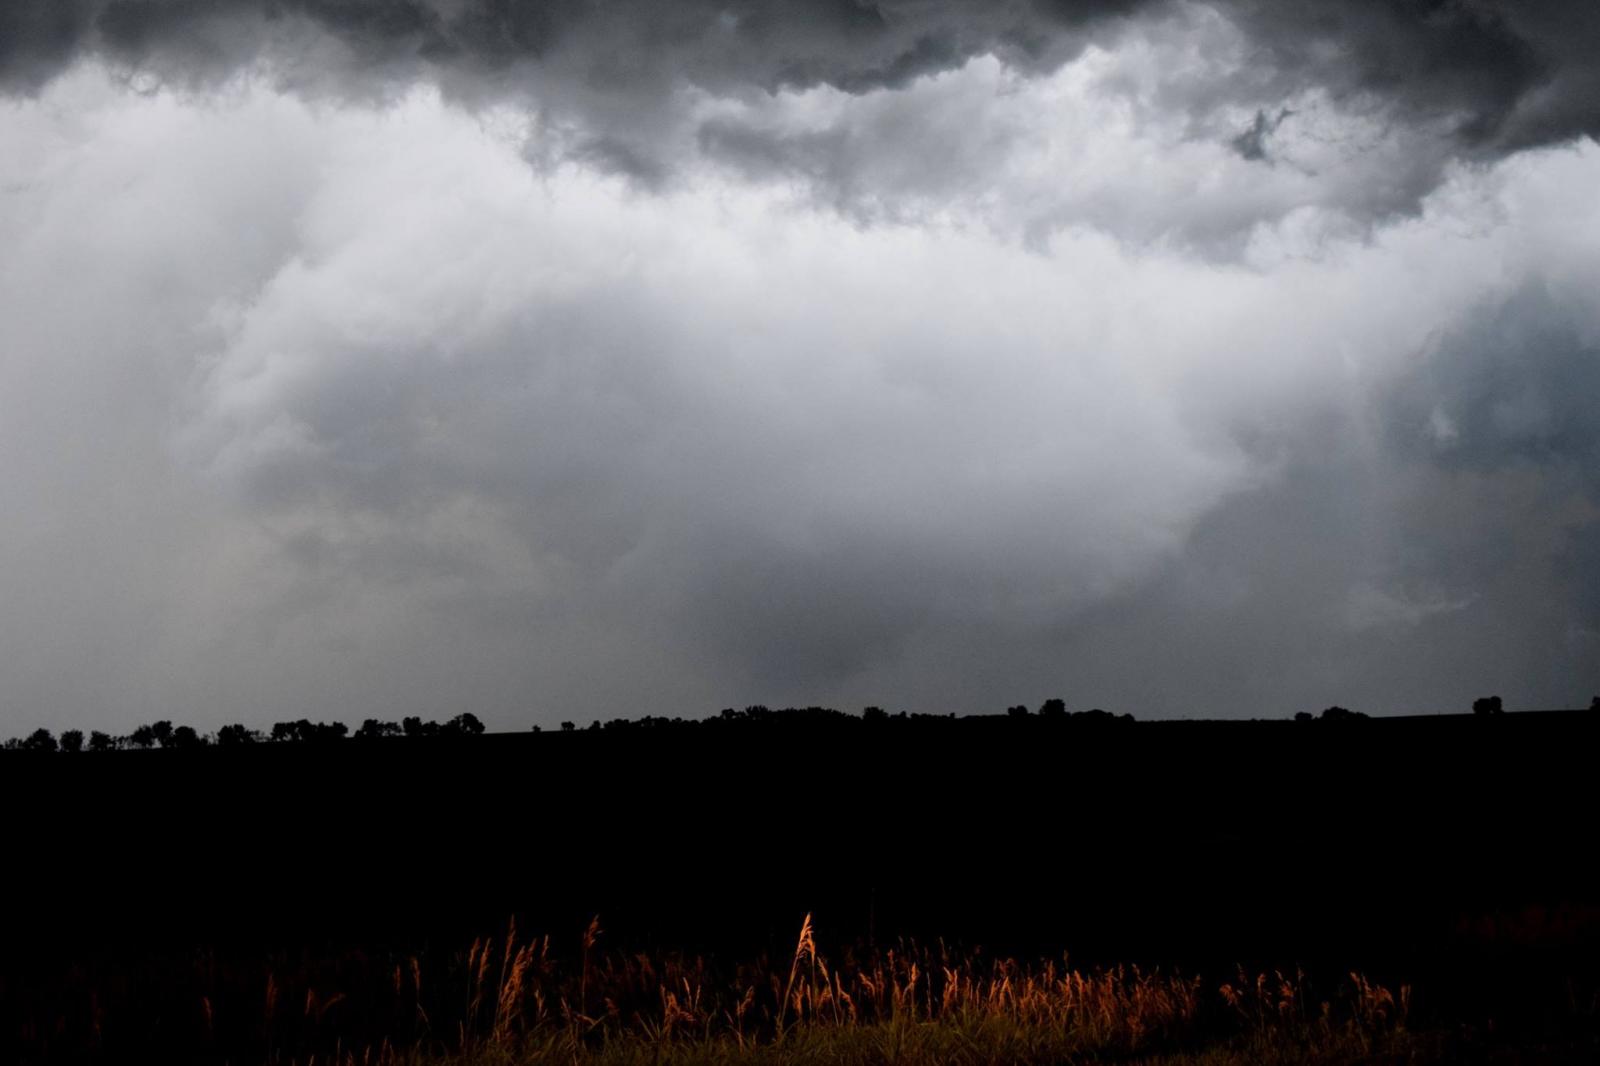 Brief Tornado near Clark, SD - Photo by Bradley Winger